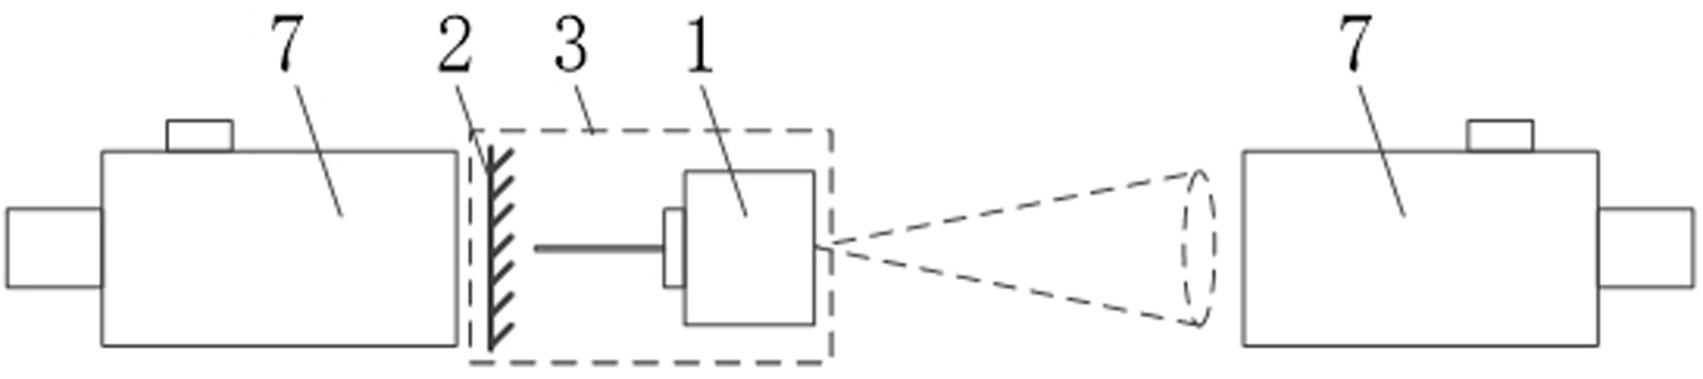 双磁光阱发散激光对准装调系统的制作方法